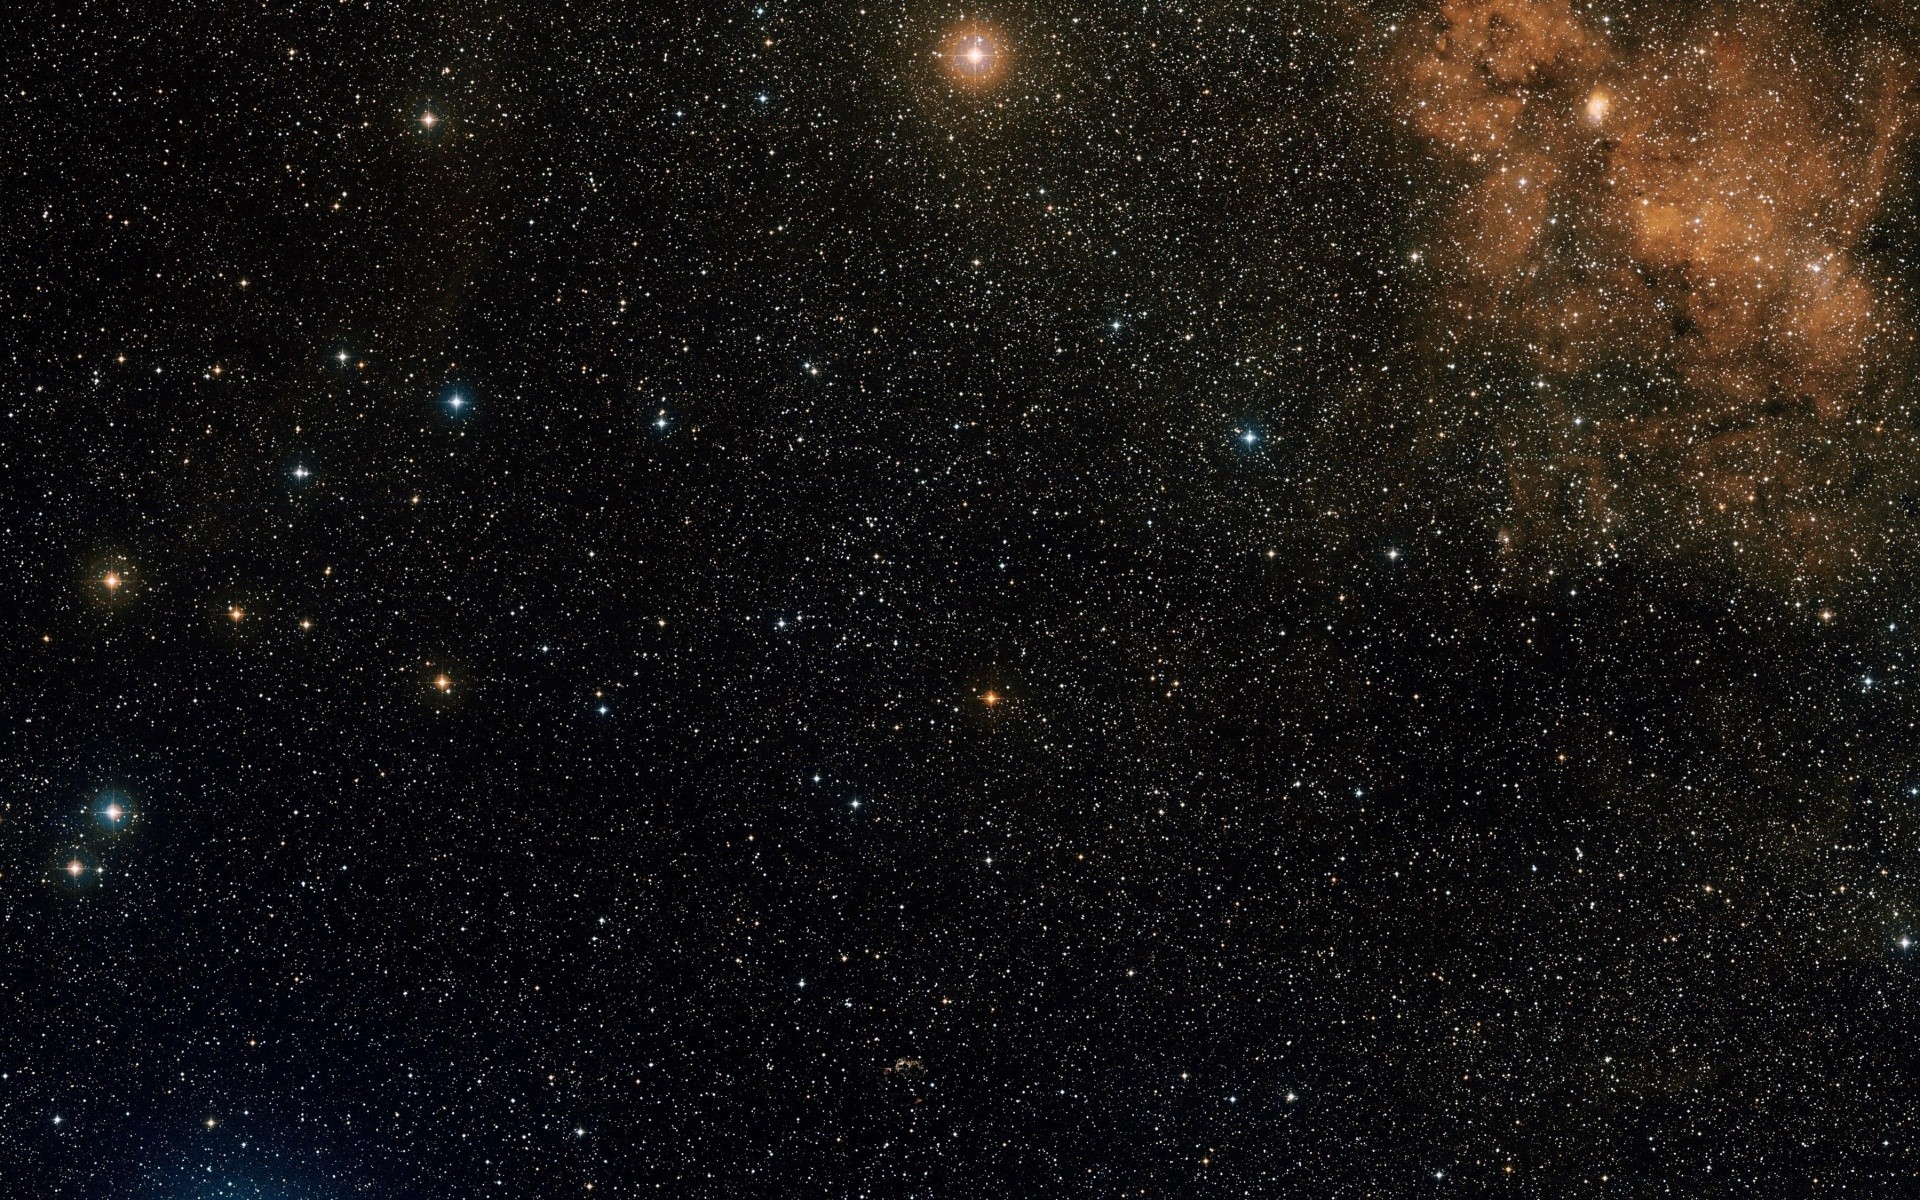 космос астрономия галактика созвездие туманность астрология пыль космос орион сверхновая стеллар темный разведка бесконечность телескоп огромный тайна планеты небесные луна